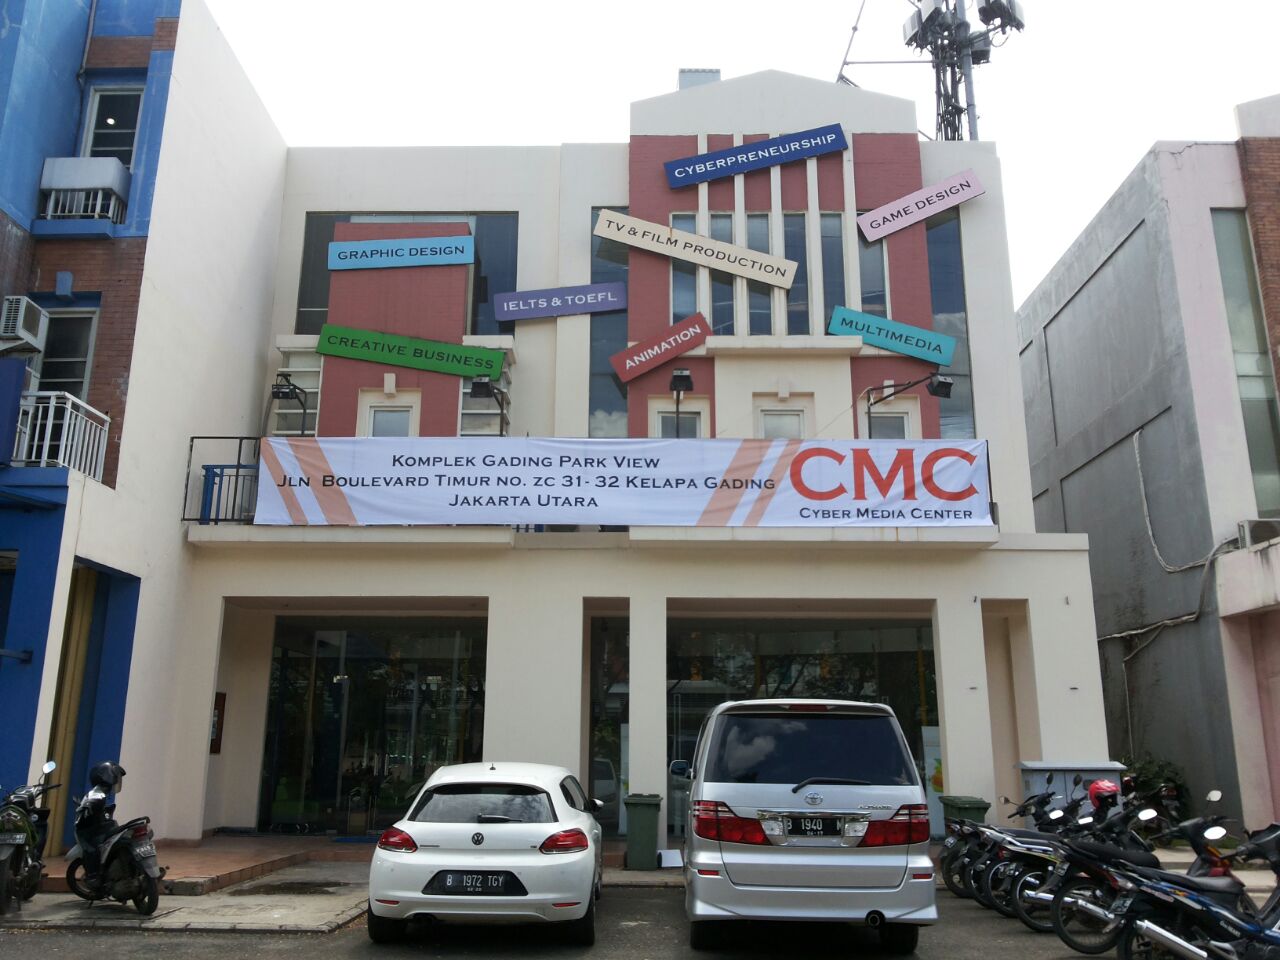 Gambar Cyber Media Centre (cmc)